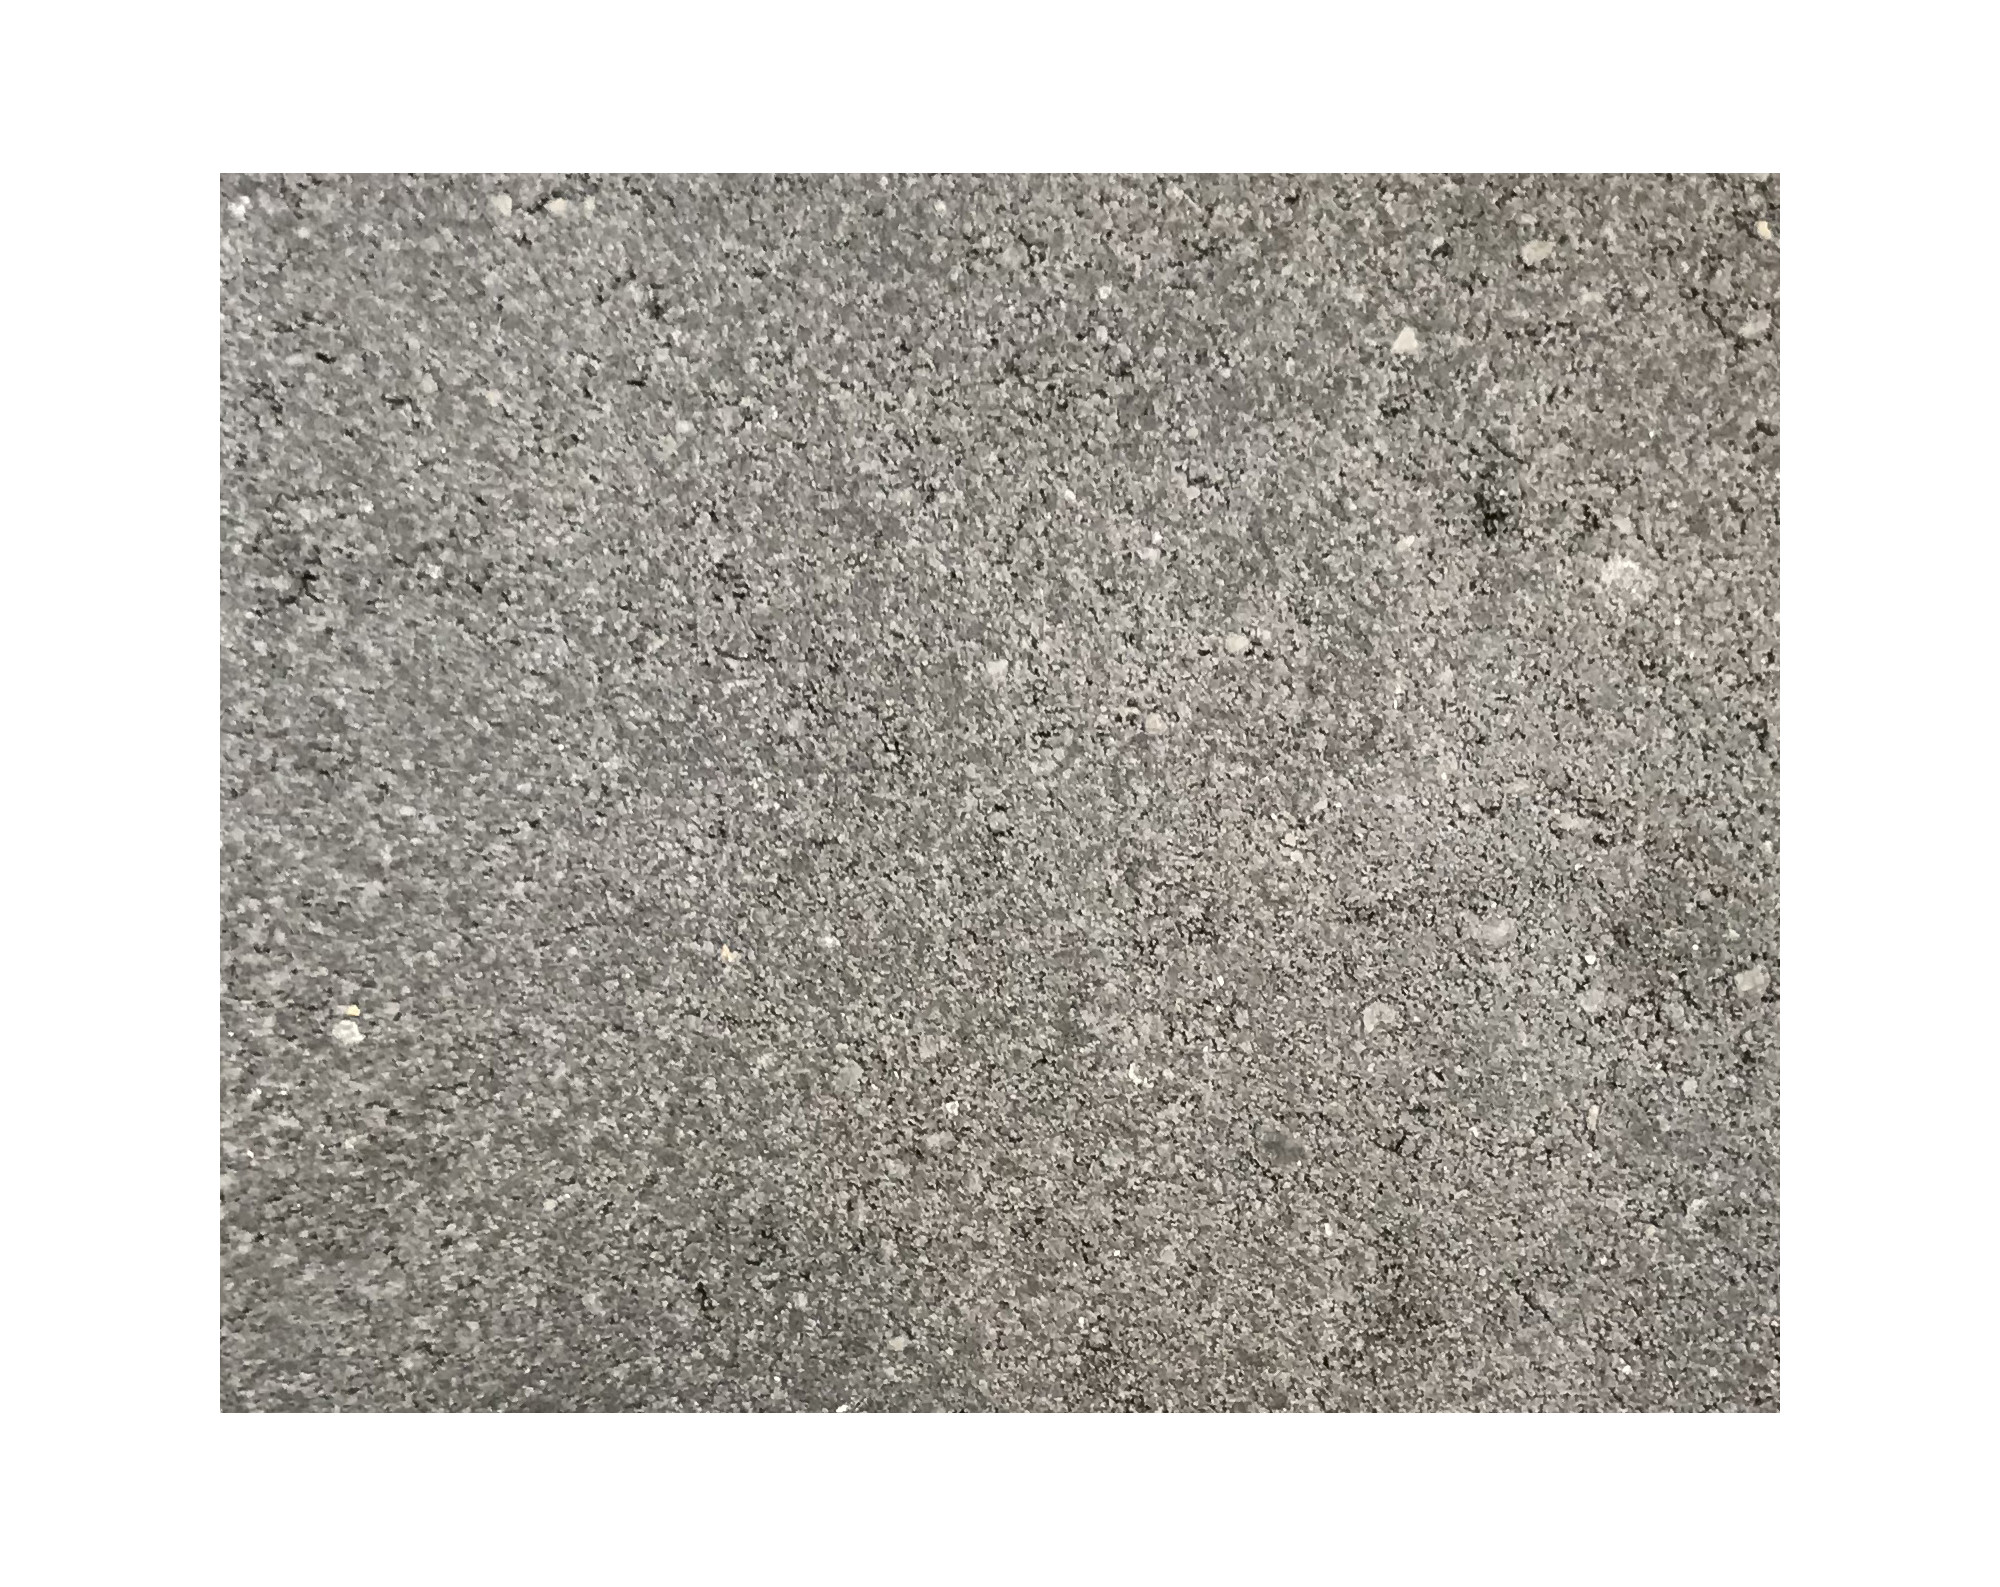 Harmo roc athenset, rustica-serie, ovaal d:3,50mx6,20m, a.zwart, beton